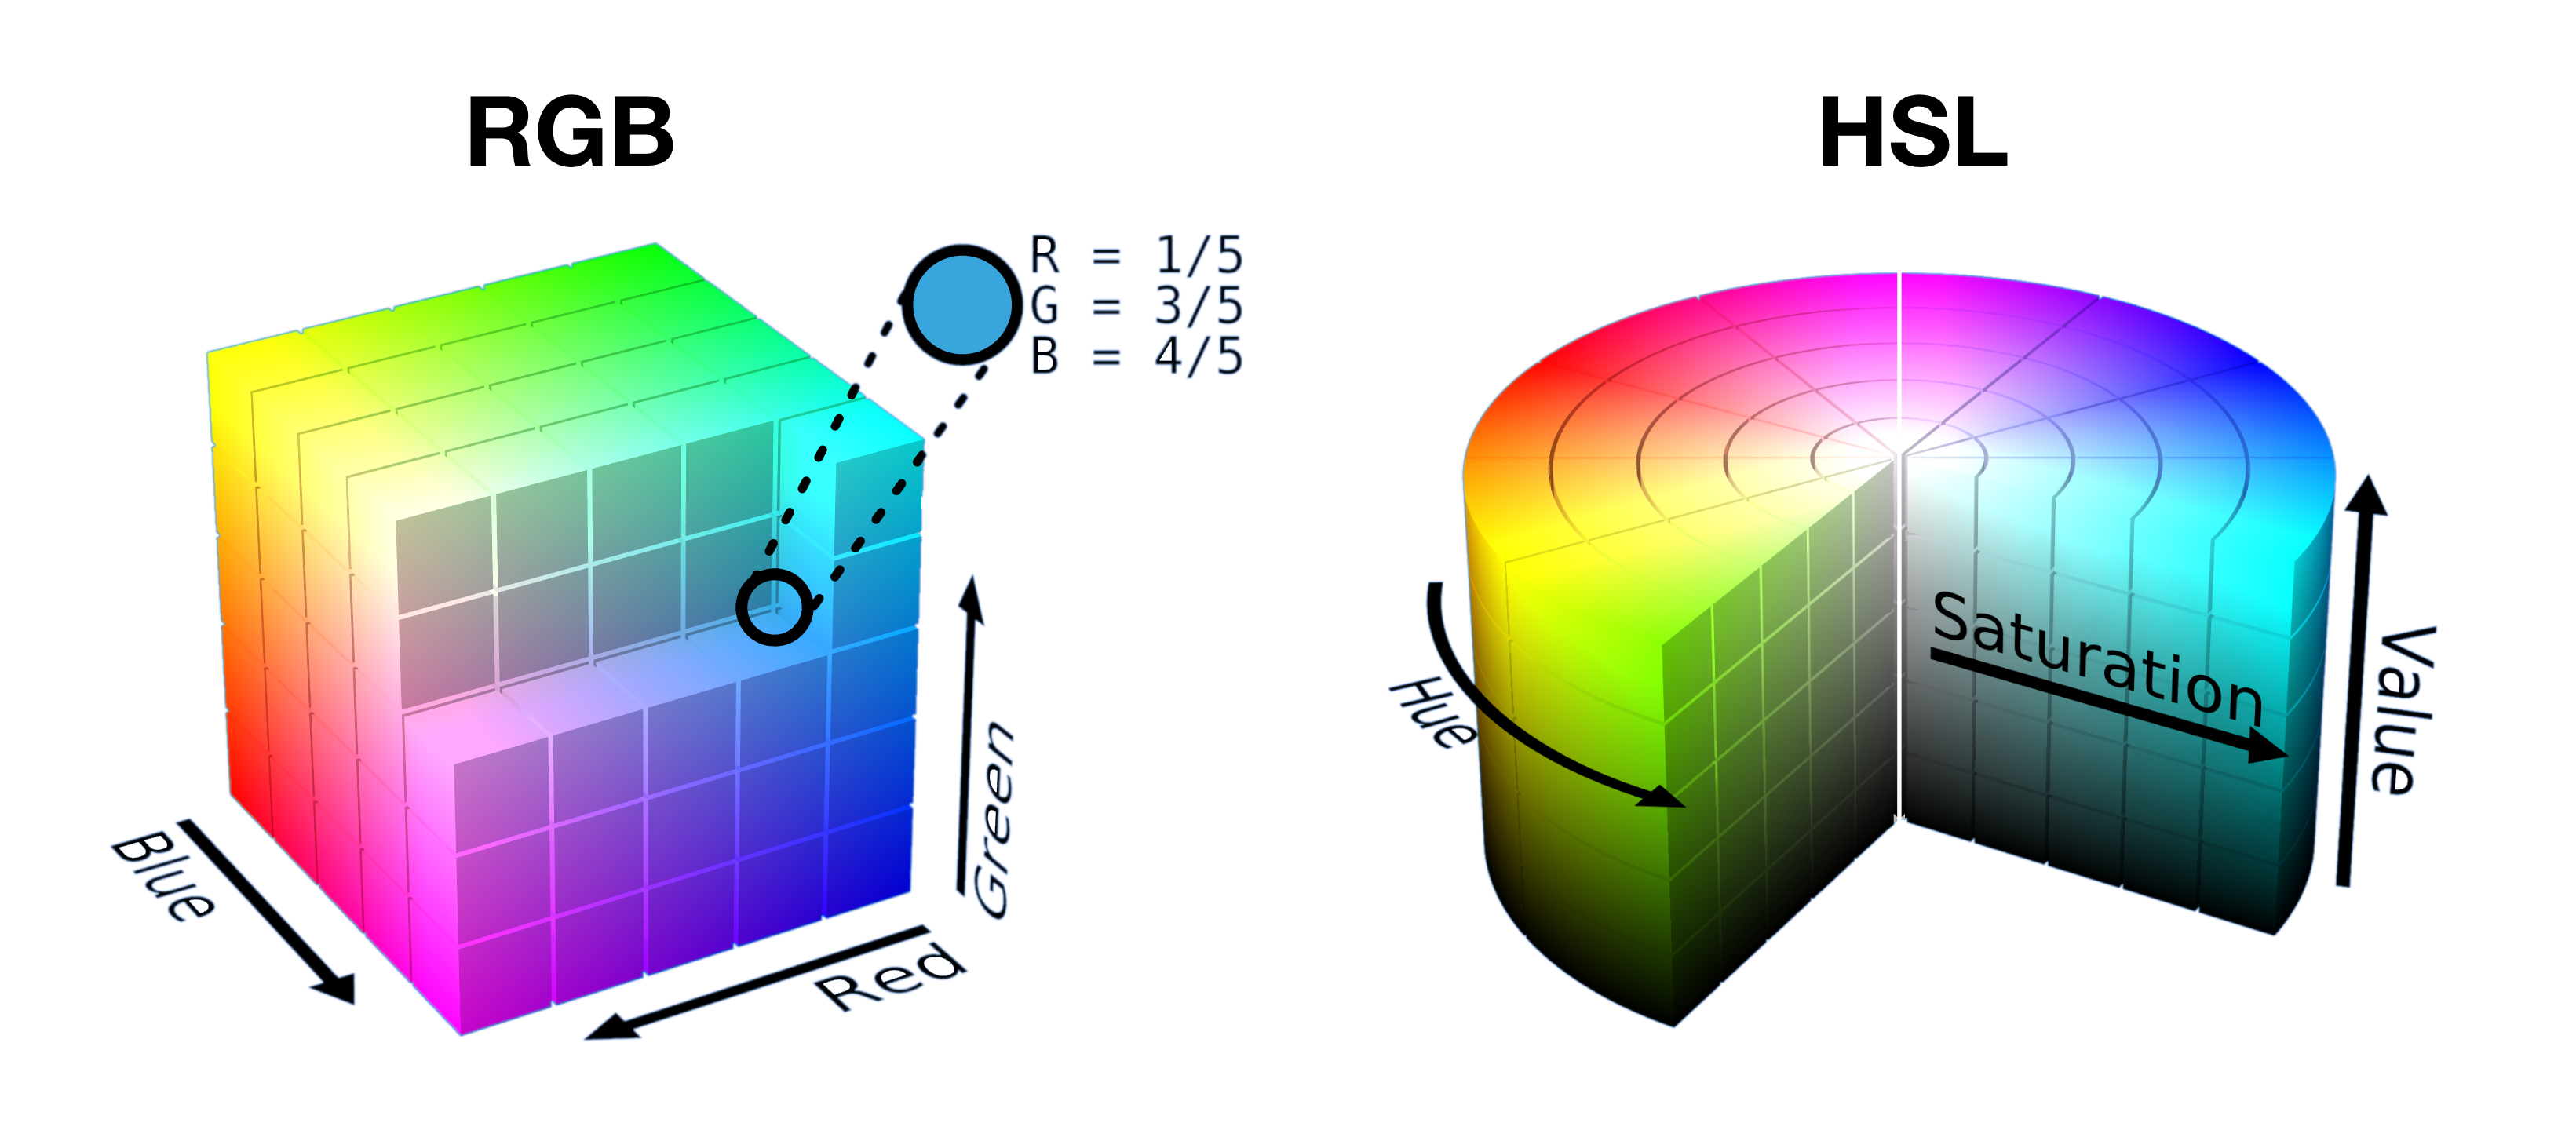 반으로 잘라낸 RGB 큐브와 HSL 원통형 슬라이스를 나란히 표시하여 각 공간에서 색상이 어떻게 모양으로 채워지는지 보여줍니다.